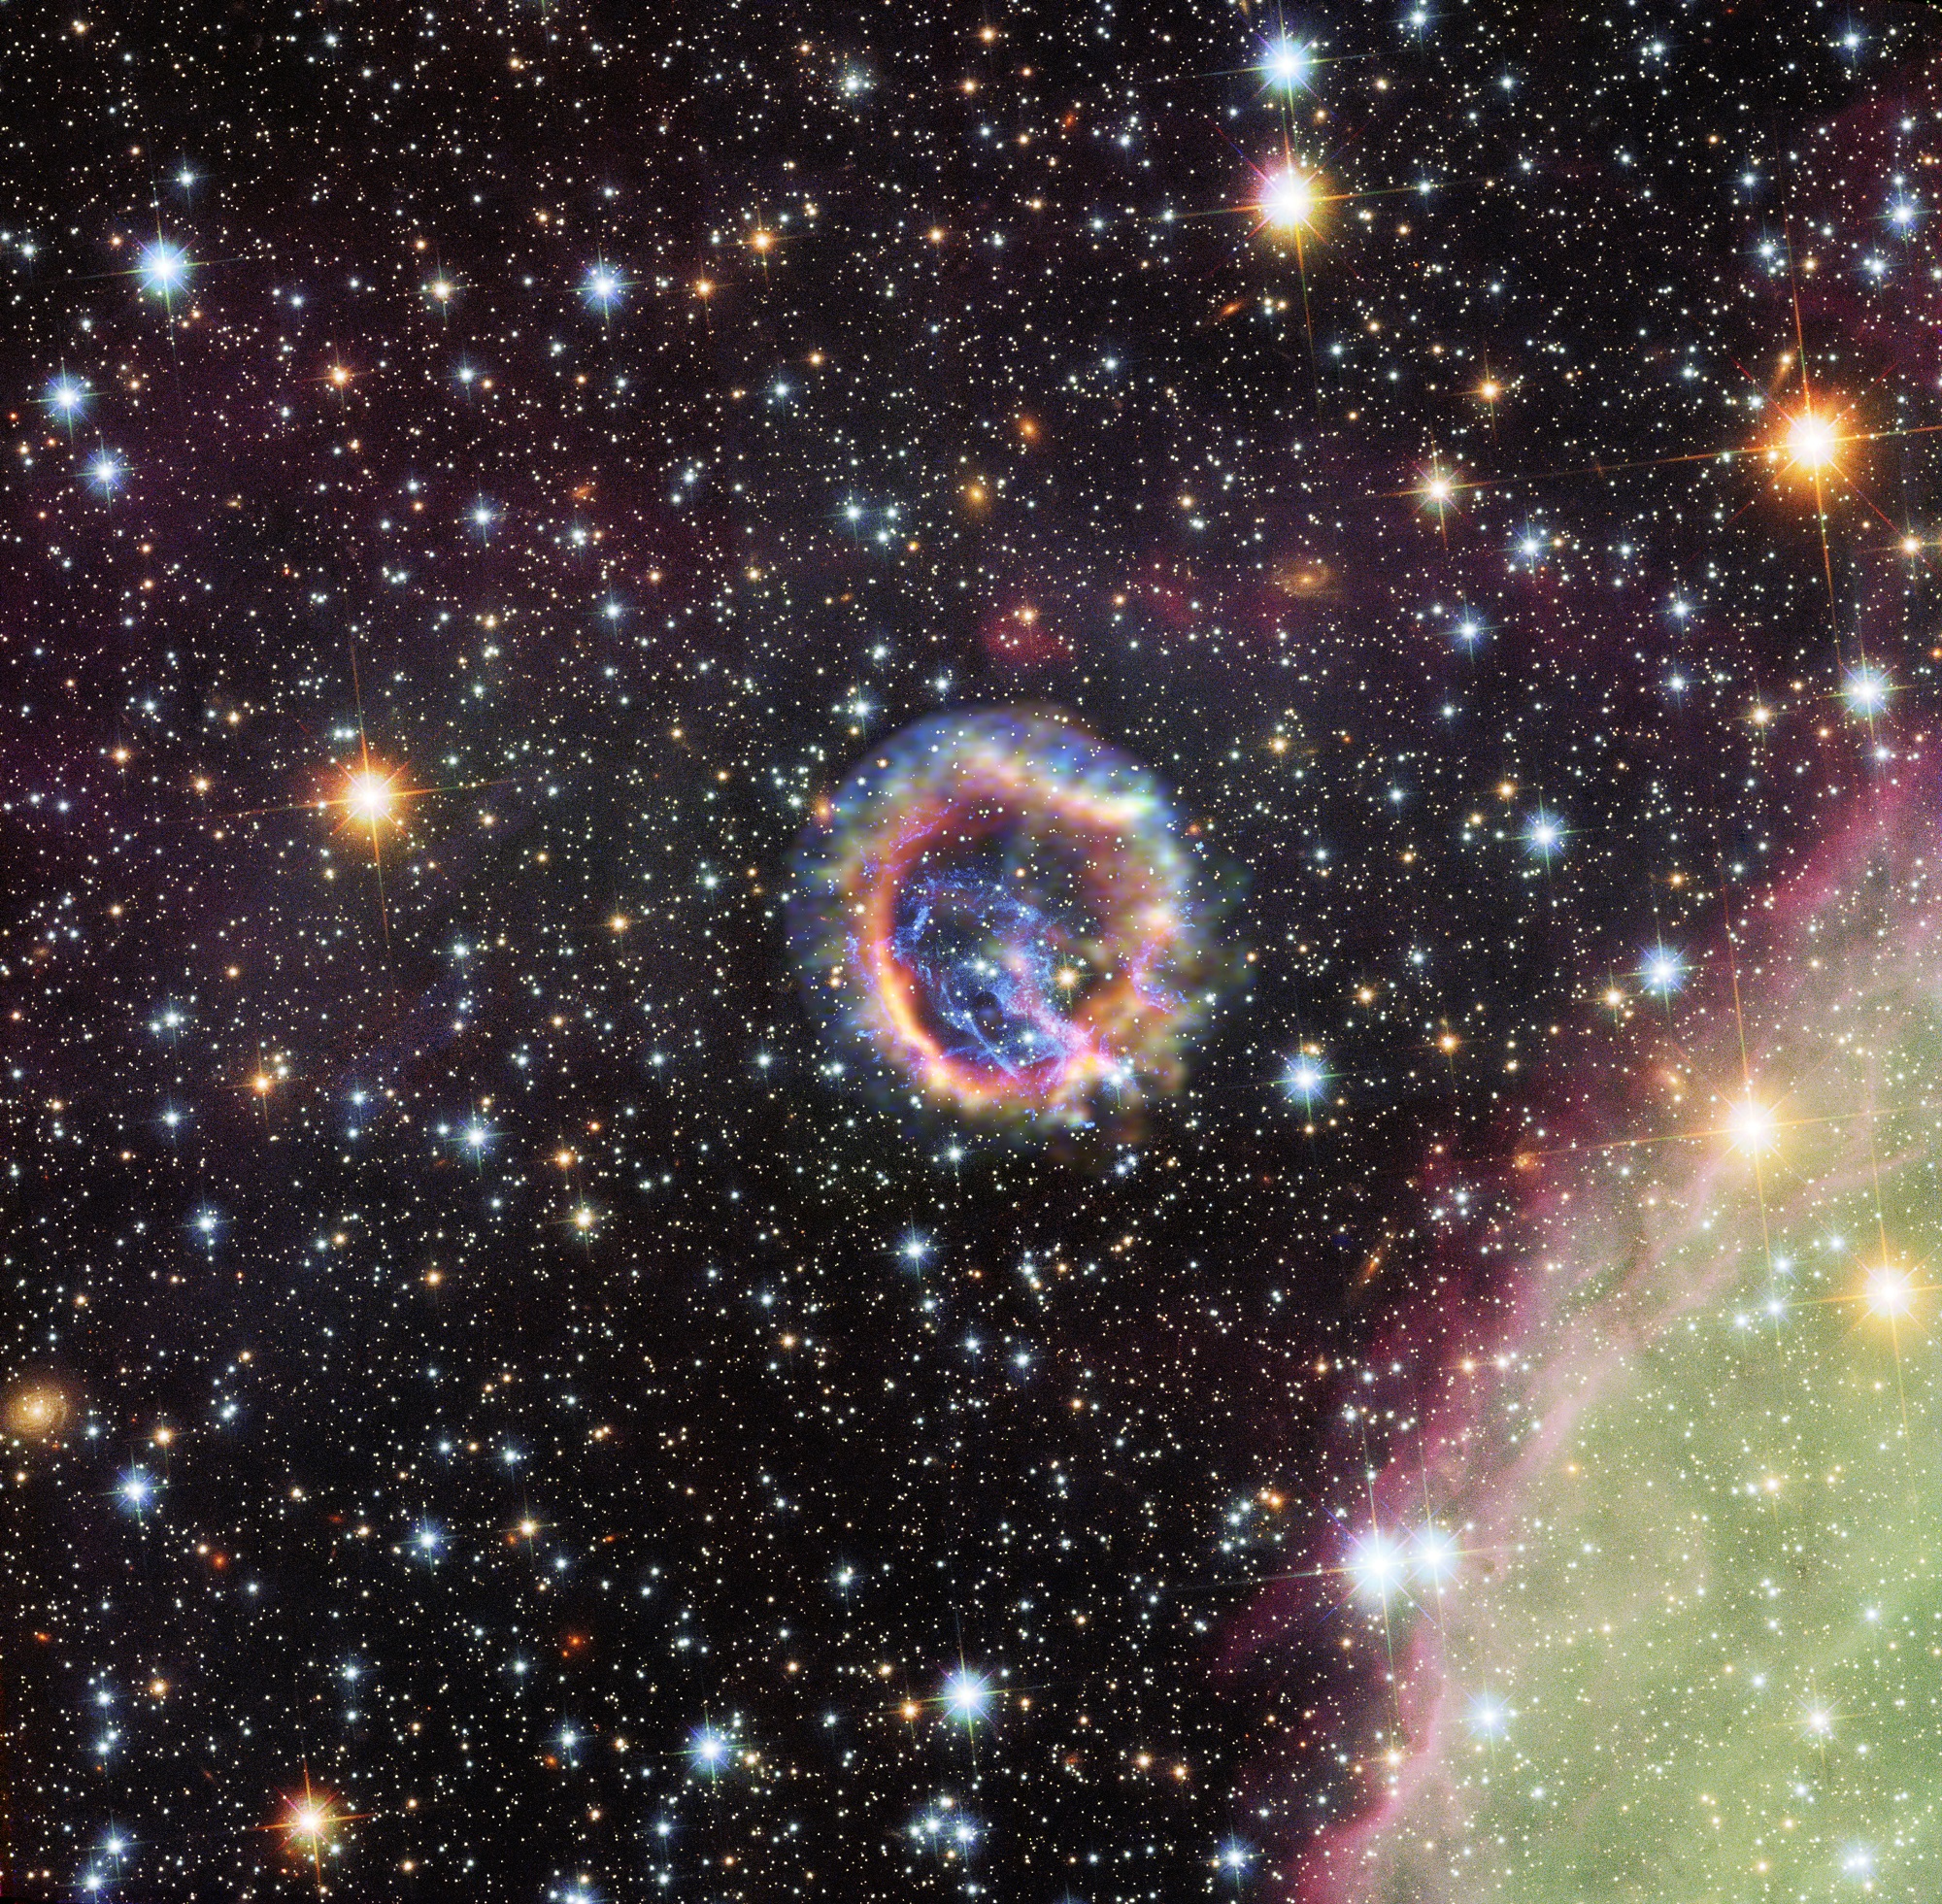 Le rémanent de supernova E0102 dans le Petit Nuage de Magellan, galaxie naine satellite de la Voie lactée située à environ 190.000 années-lumière de nous. Cette supernova était visible dans le ciel de l'hémisphère sud il y a environ 1.000 ans. C'est grâce à ce genre d'explosion d'une étoile massive en fin de vie que l'Univers s'enrichit en éléments radioactifs lourds. © X-ray (NASA/CXC/ESO/F.Vogt et al.); Optical (ESO/VLT/MUSE), Optical (NASA/STScI)